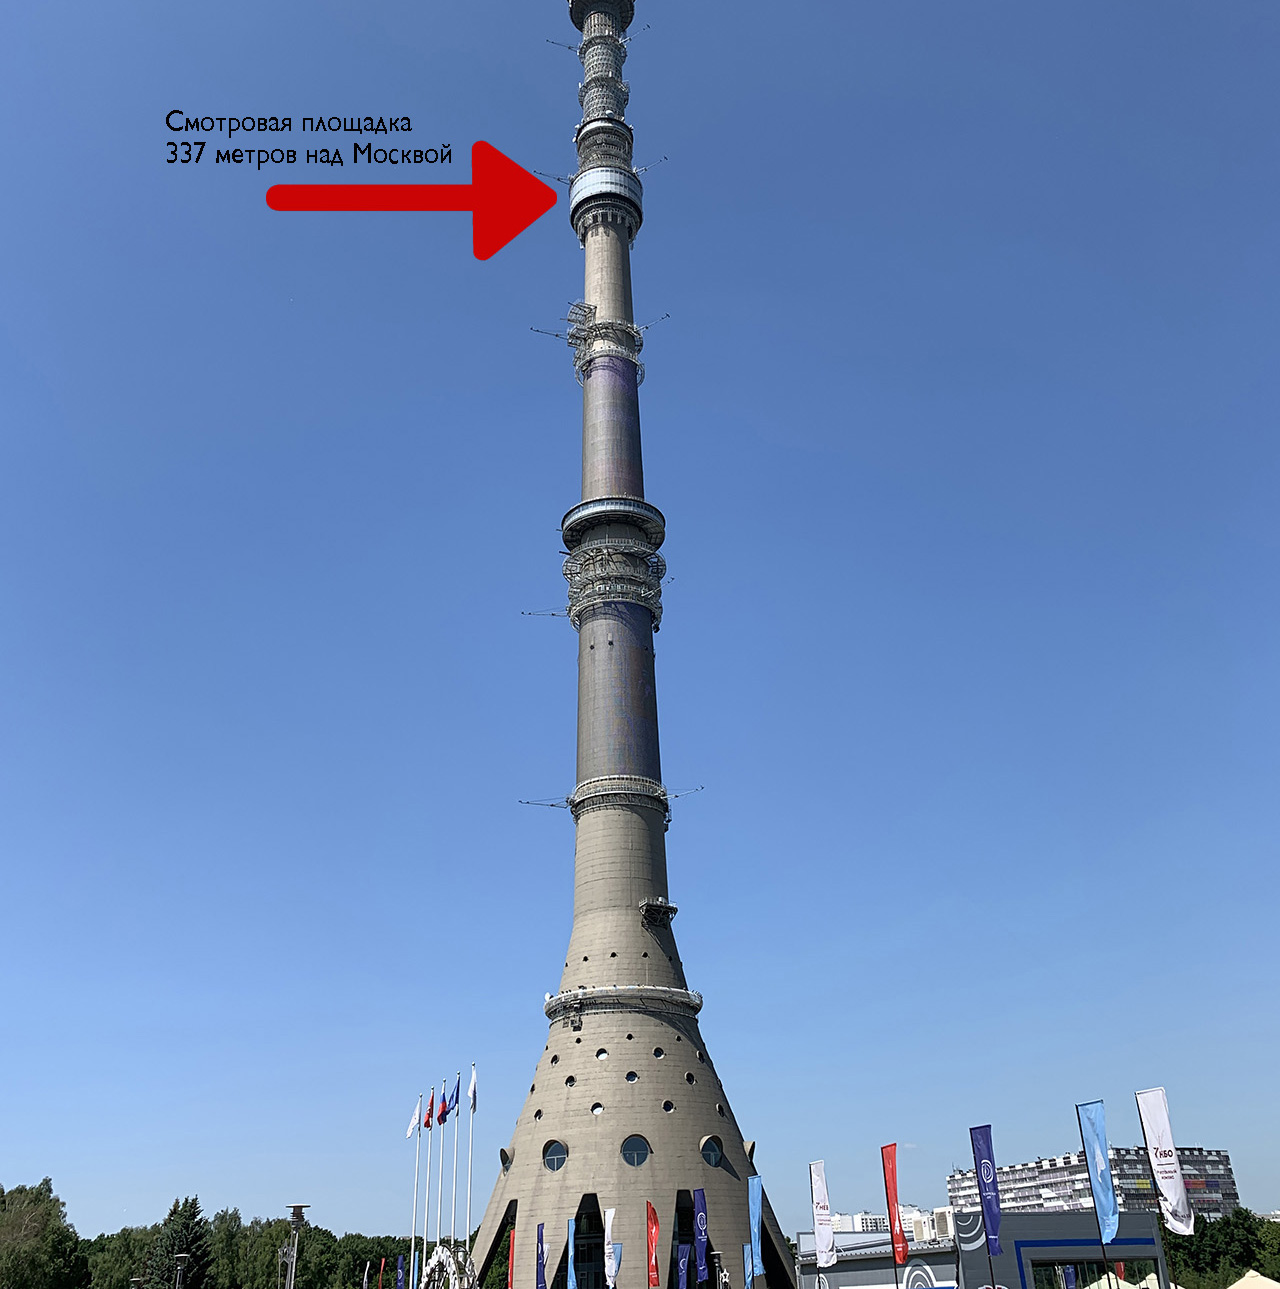 Как я поднялся на Останкинскую башню. Видели Москву с высоты 340 метров?